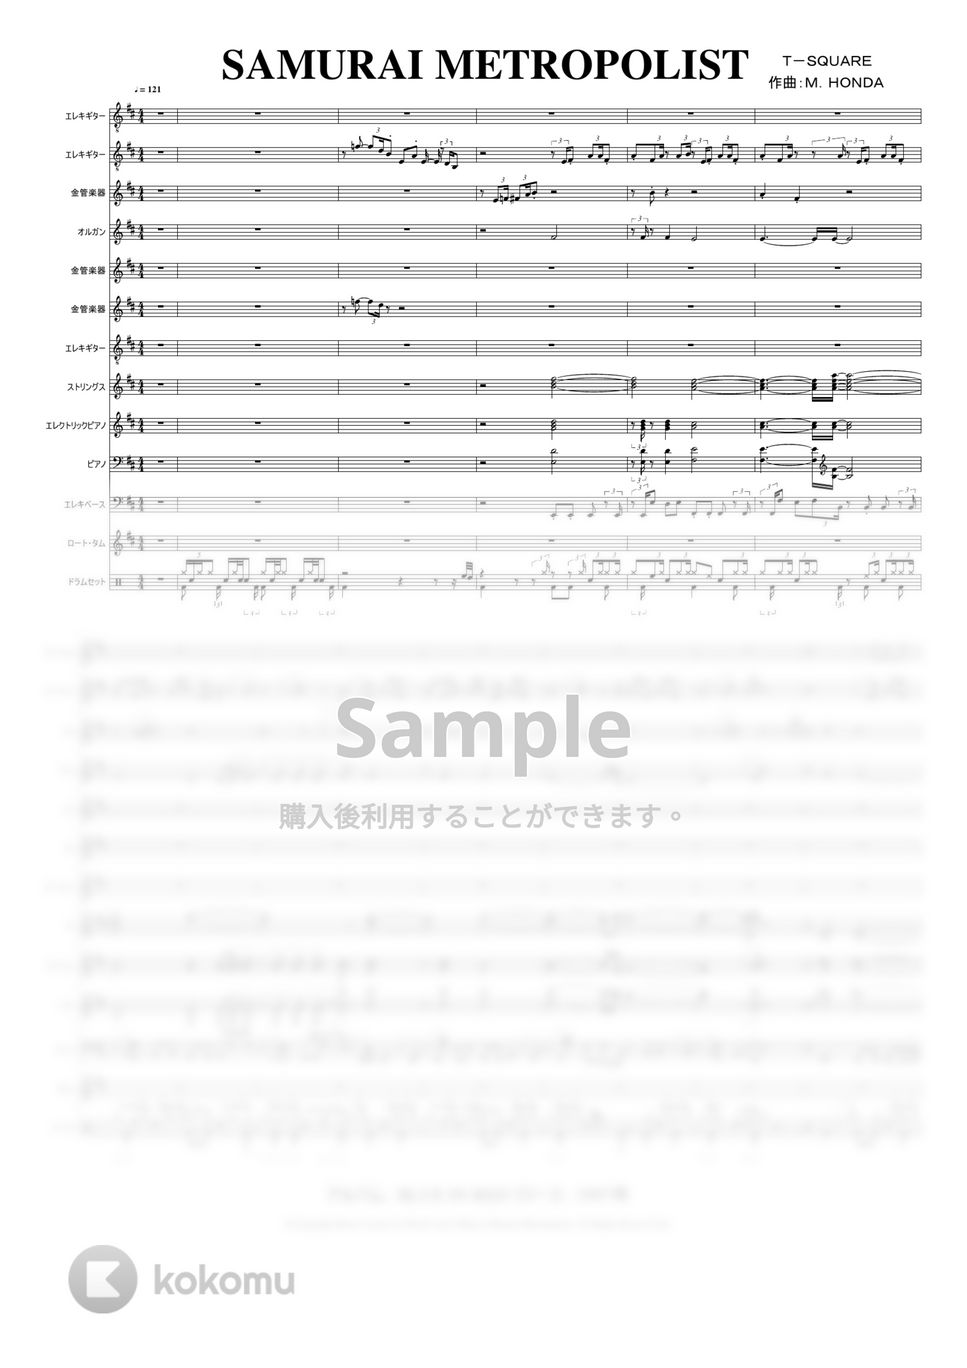 T-SQUARE - SAMURAI METROPOLIS (アルバム： BLUE IN RED リリース： 1997年　作曲：本田雅人) by @MitsuruMinamiyama